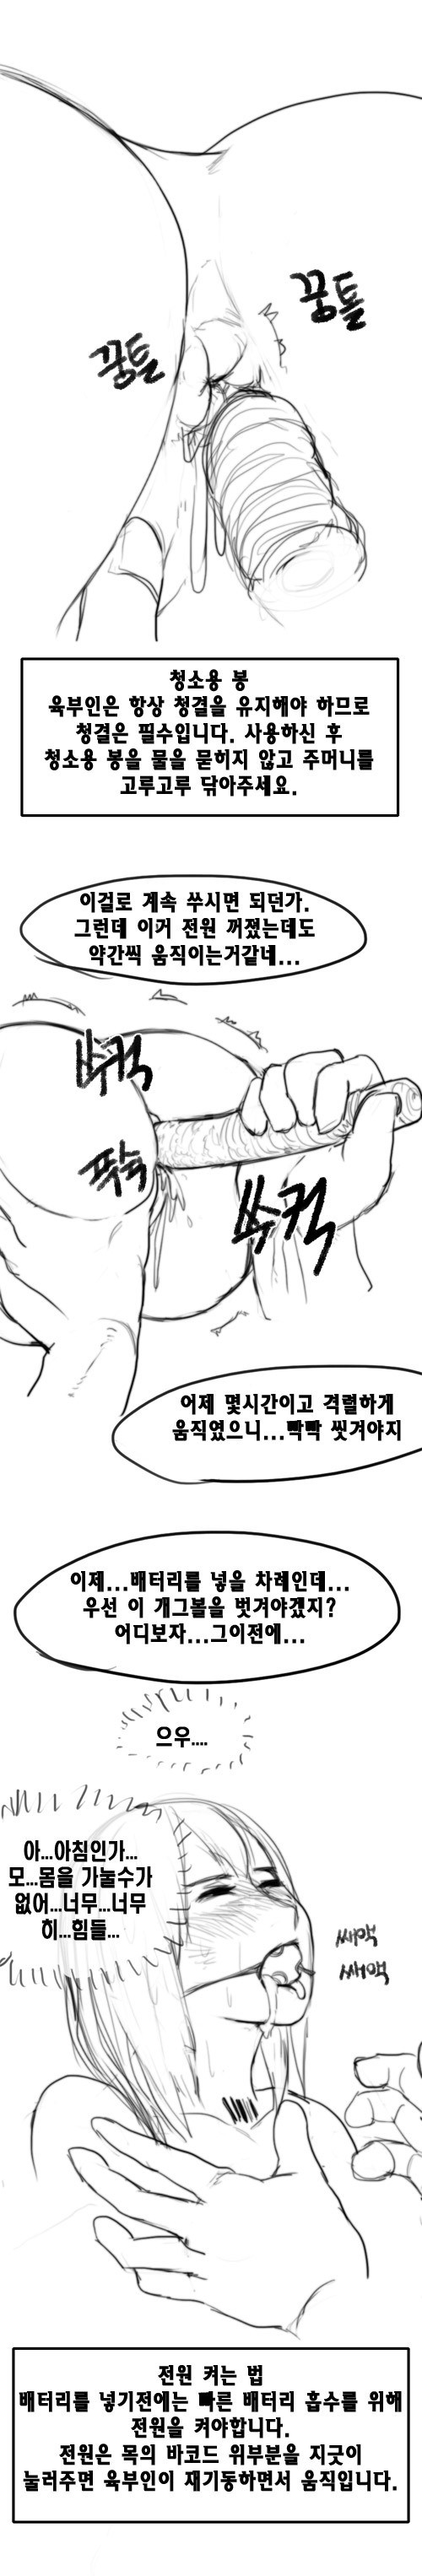 [캬 명작이네] - 육부인 구입하는만화 - [Korean] 